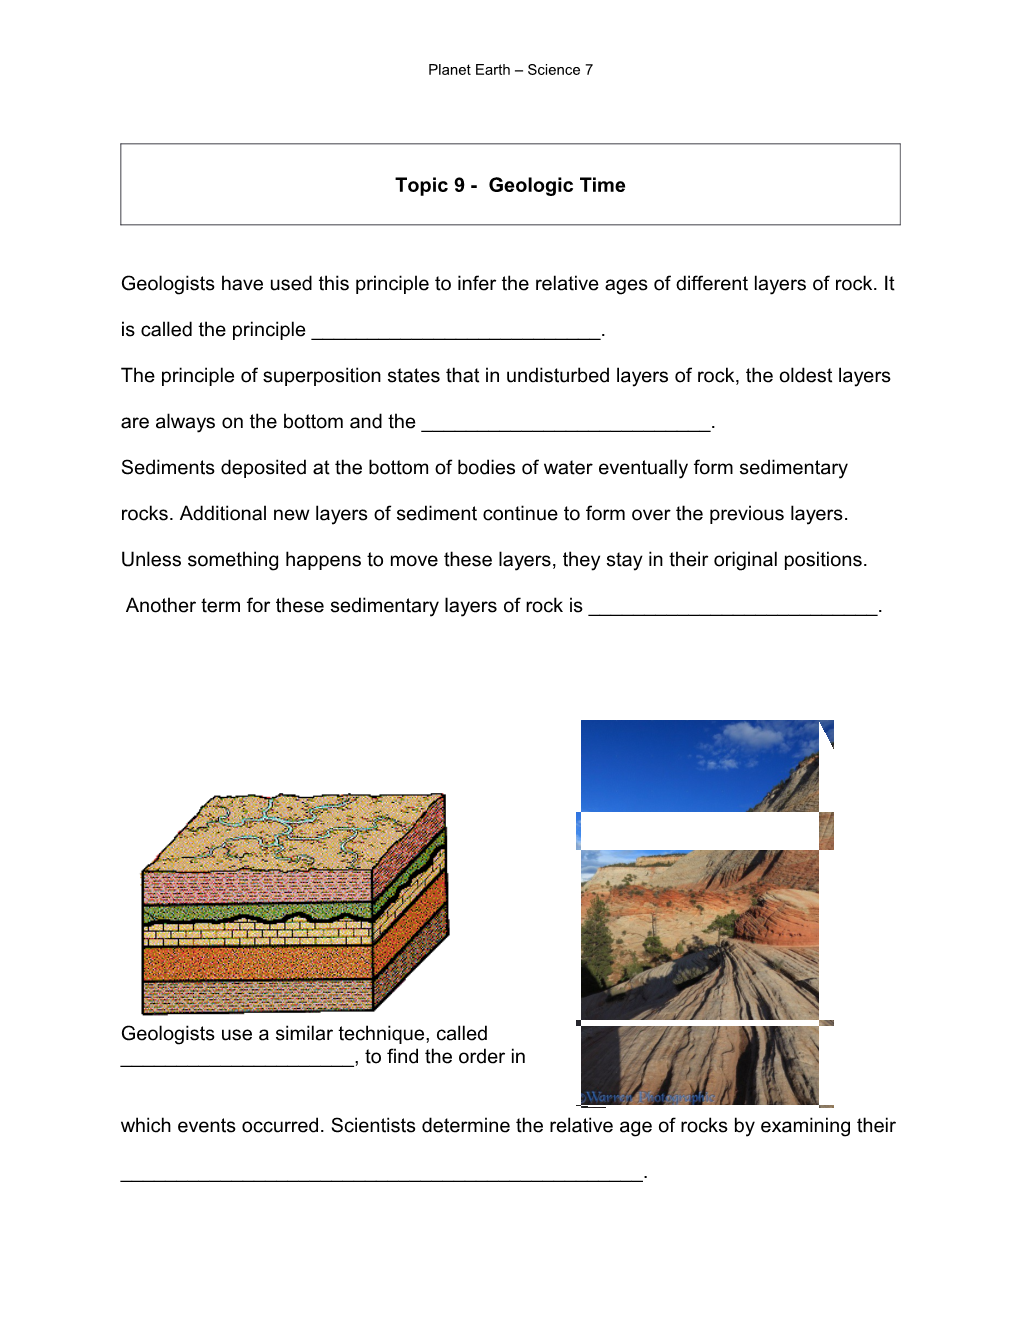 Topic 9 - Geologic Time